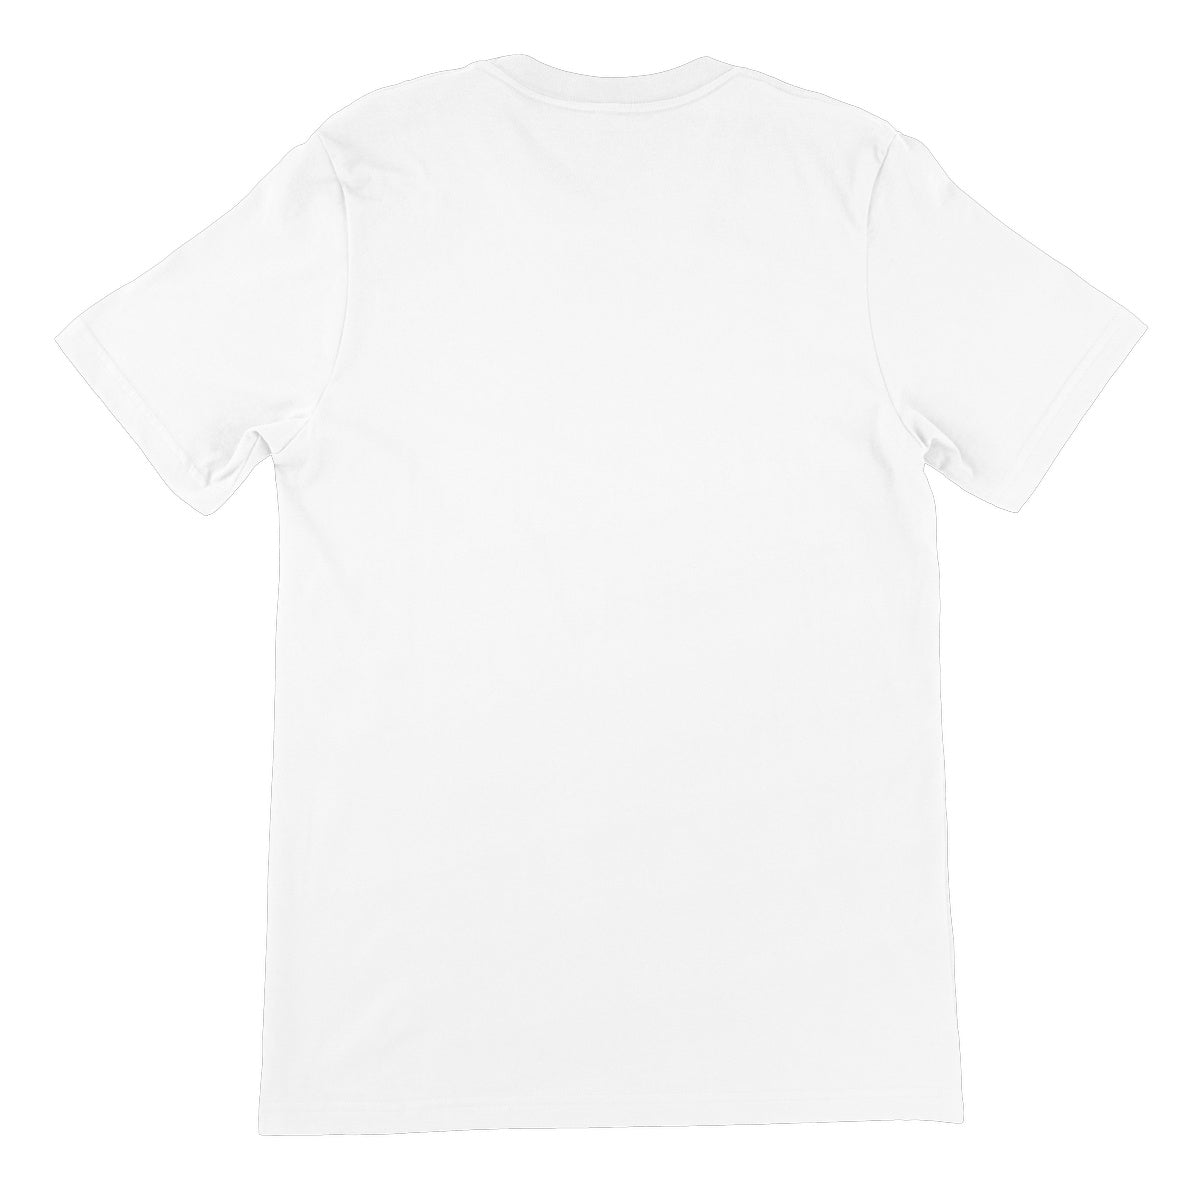 Morse Theory, Upright Unisex Short Sleeve T-Shirt